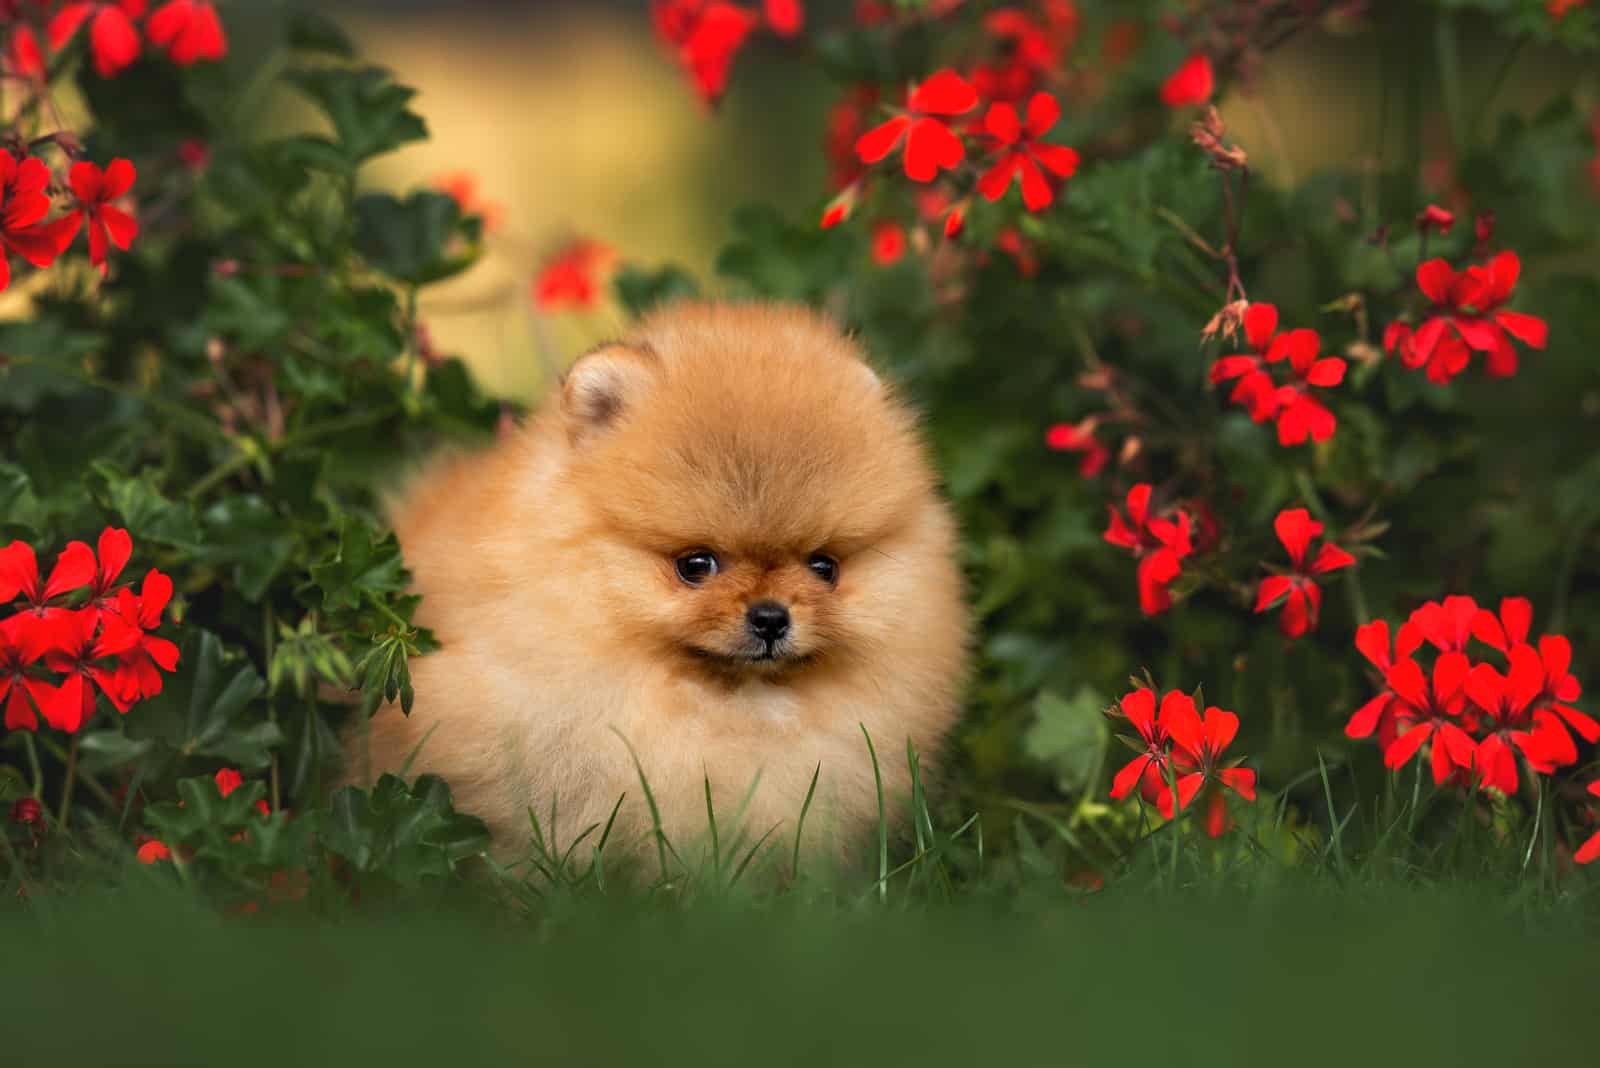 Pomeranian standing in grass in flowers